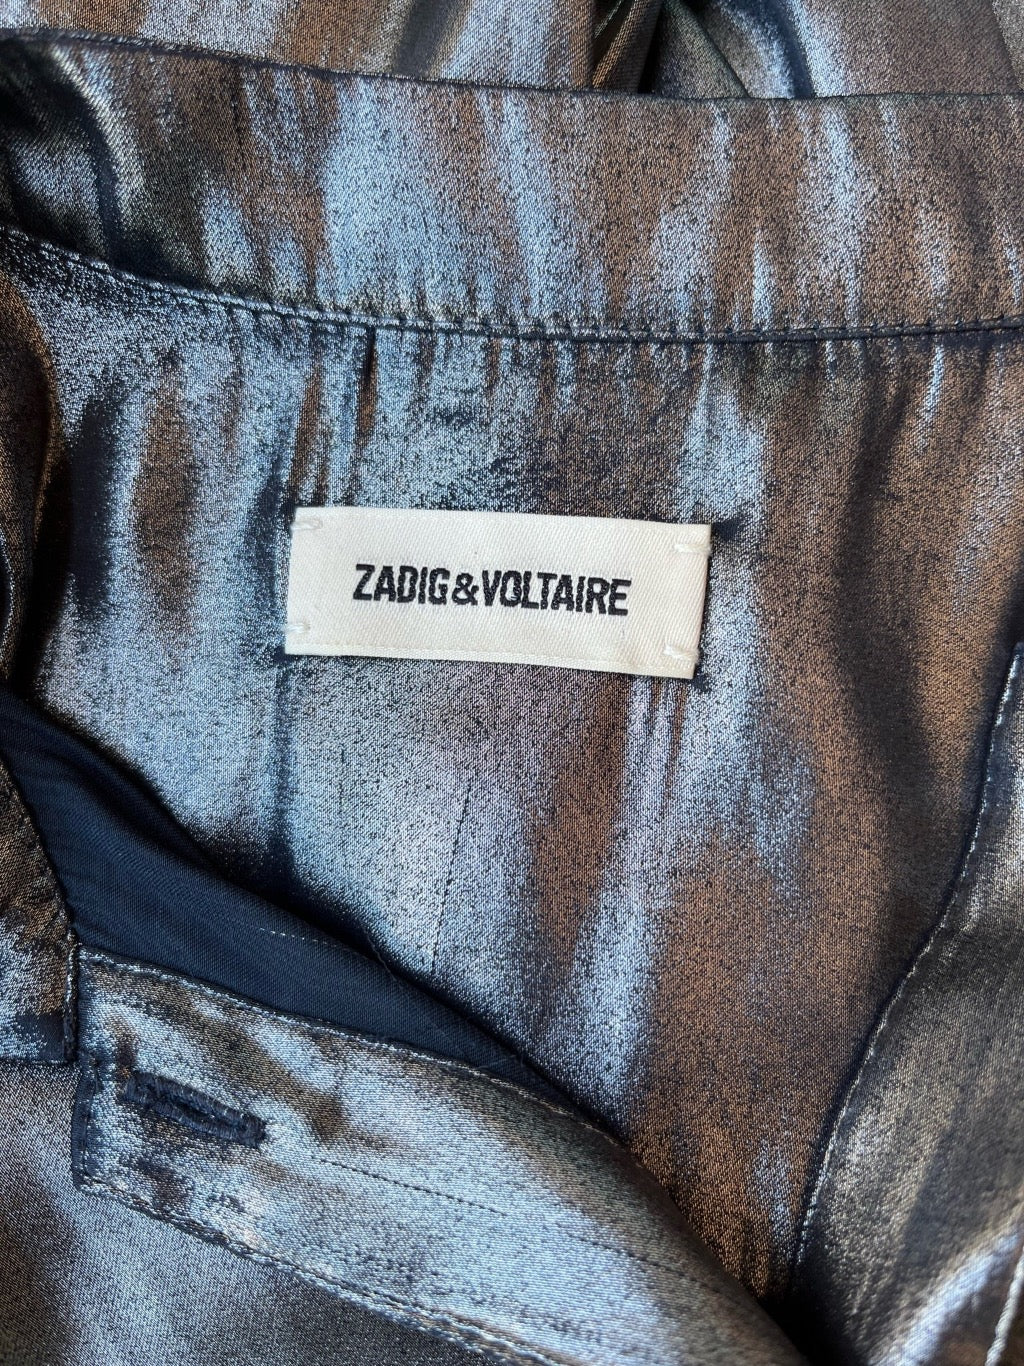 Zadig & Voltaire Label